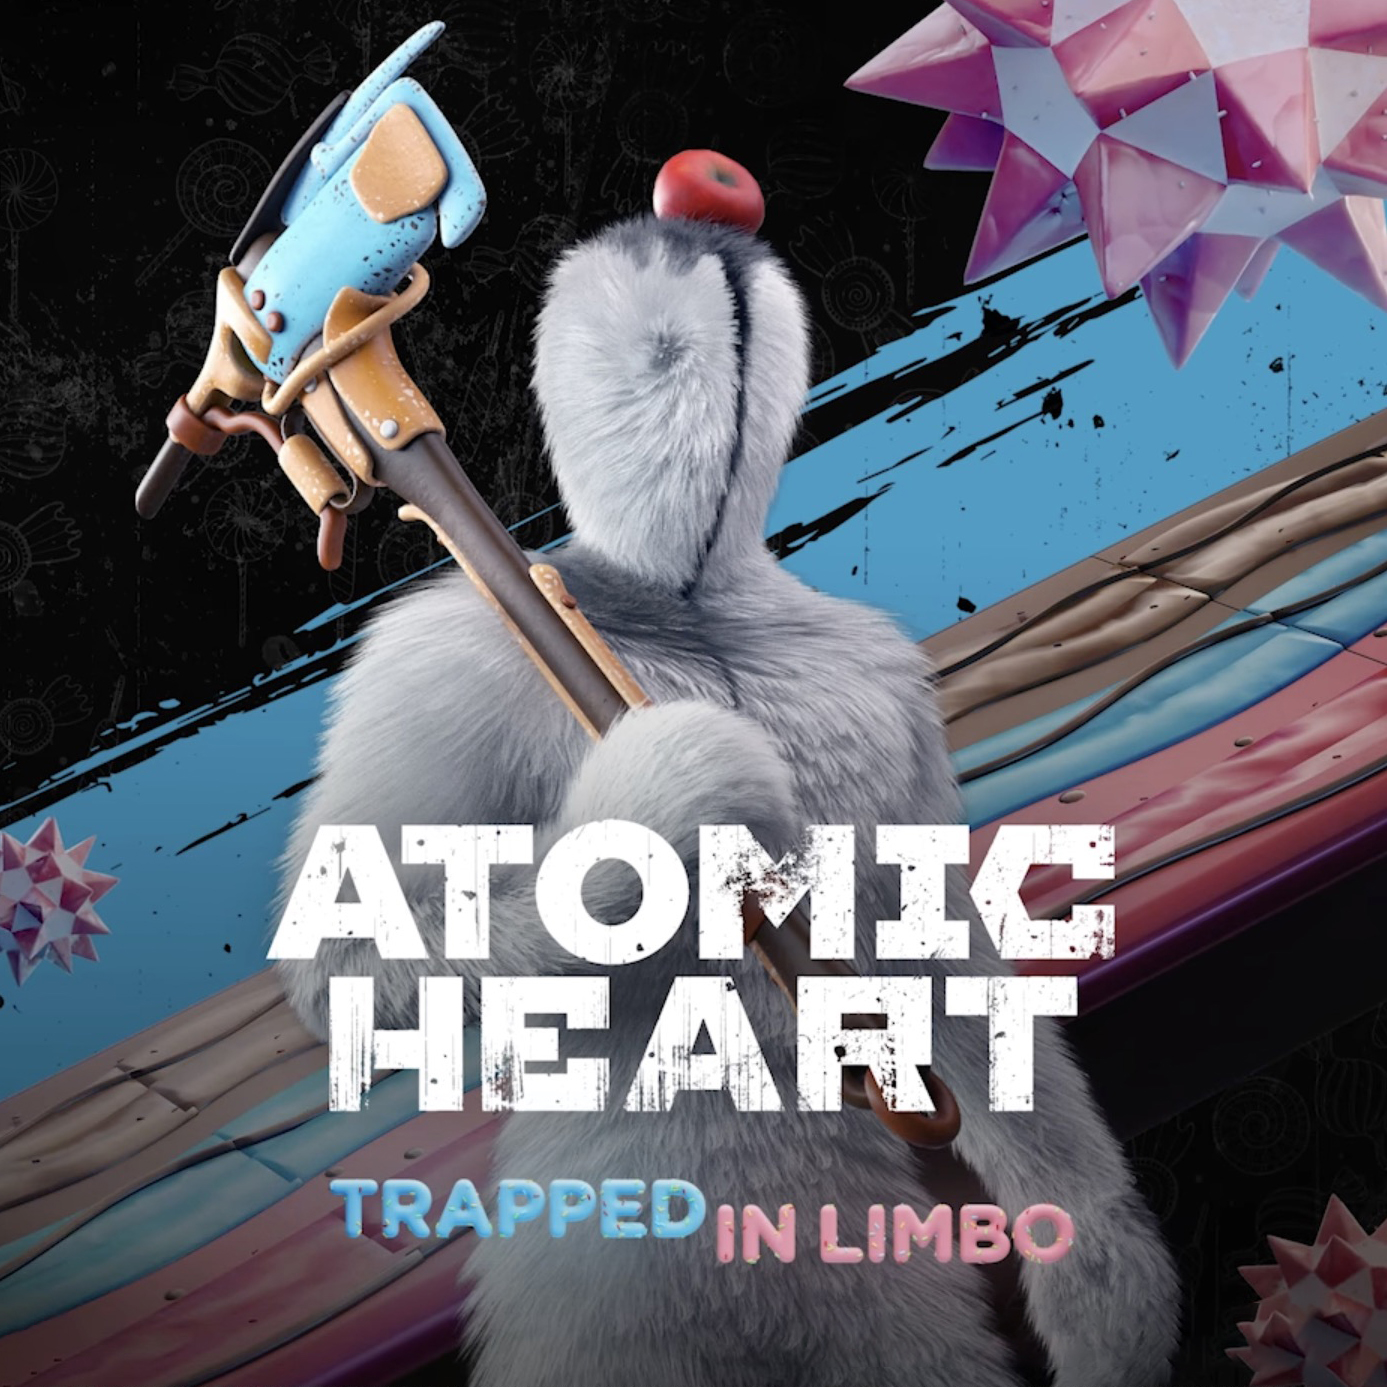 Скриншот Atomic Heart. Premium + DLC | ОНЛАЙН | АВТОАКТИВАЦИЯ🔥